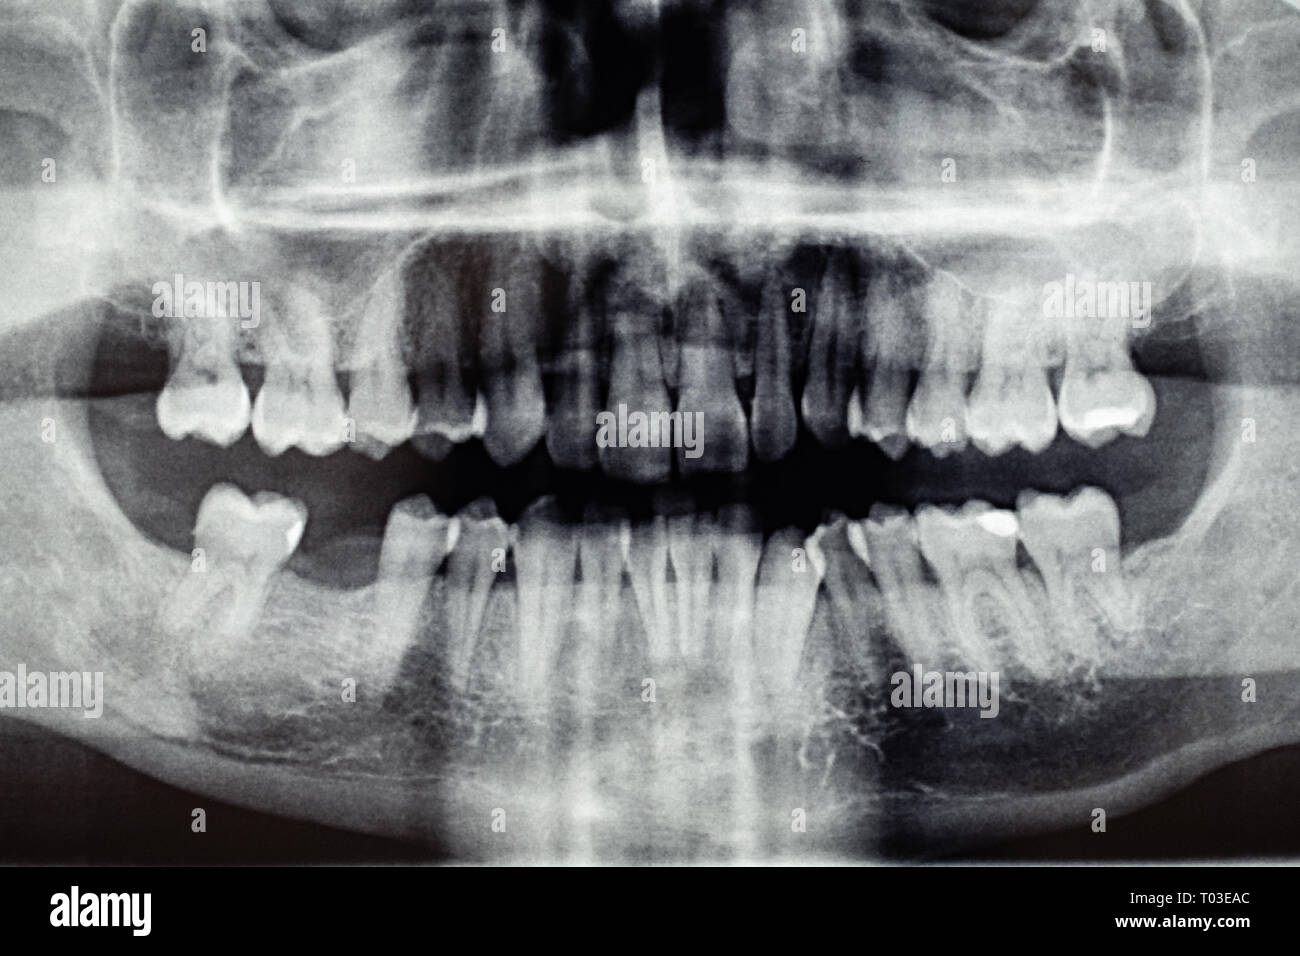 La radiographie dentaire panoramique, un trou de la dent retour Banque D'Images